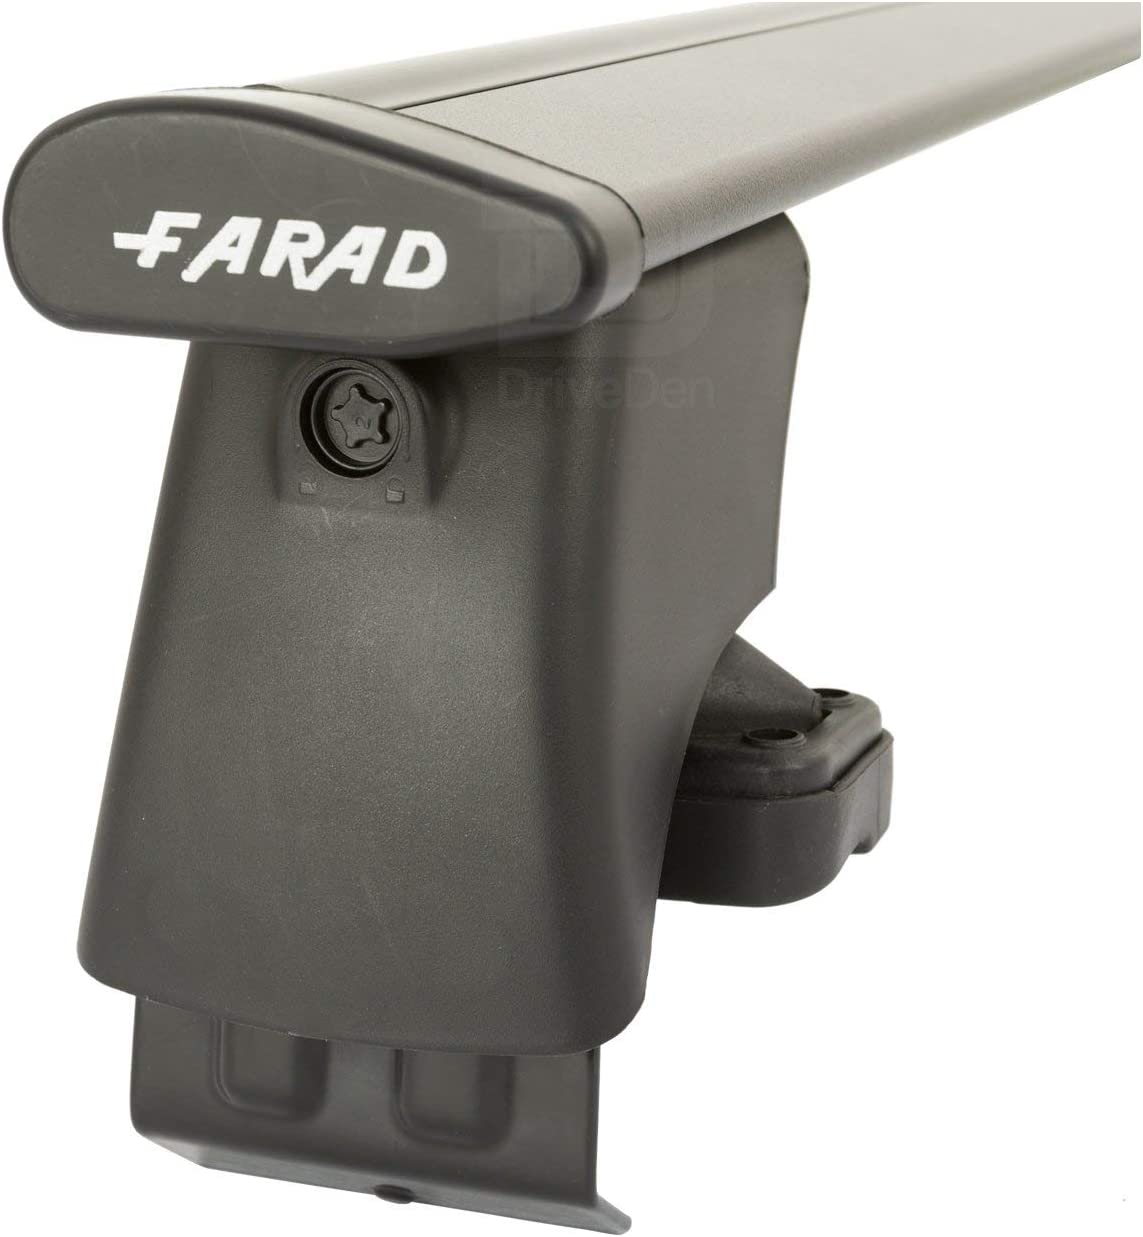 FARAD-Kit H2 per barre portatutto - Fiat Punto 1999-2011 (senza corrimano)